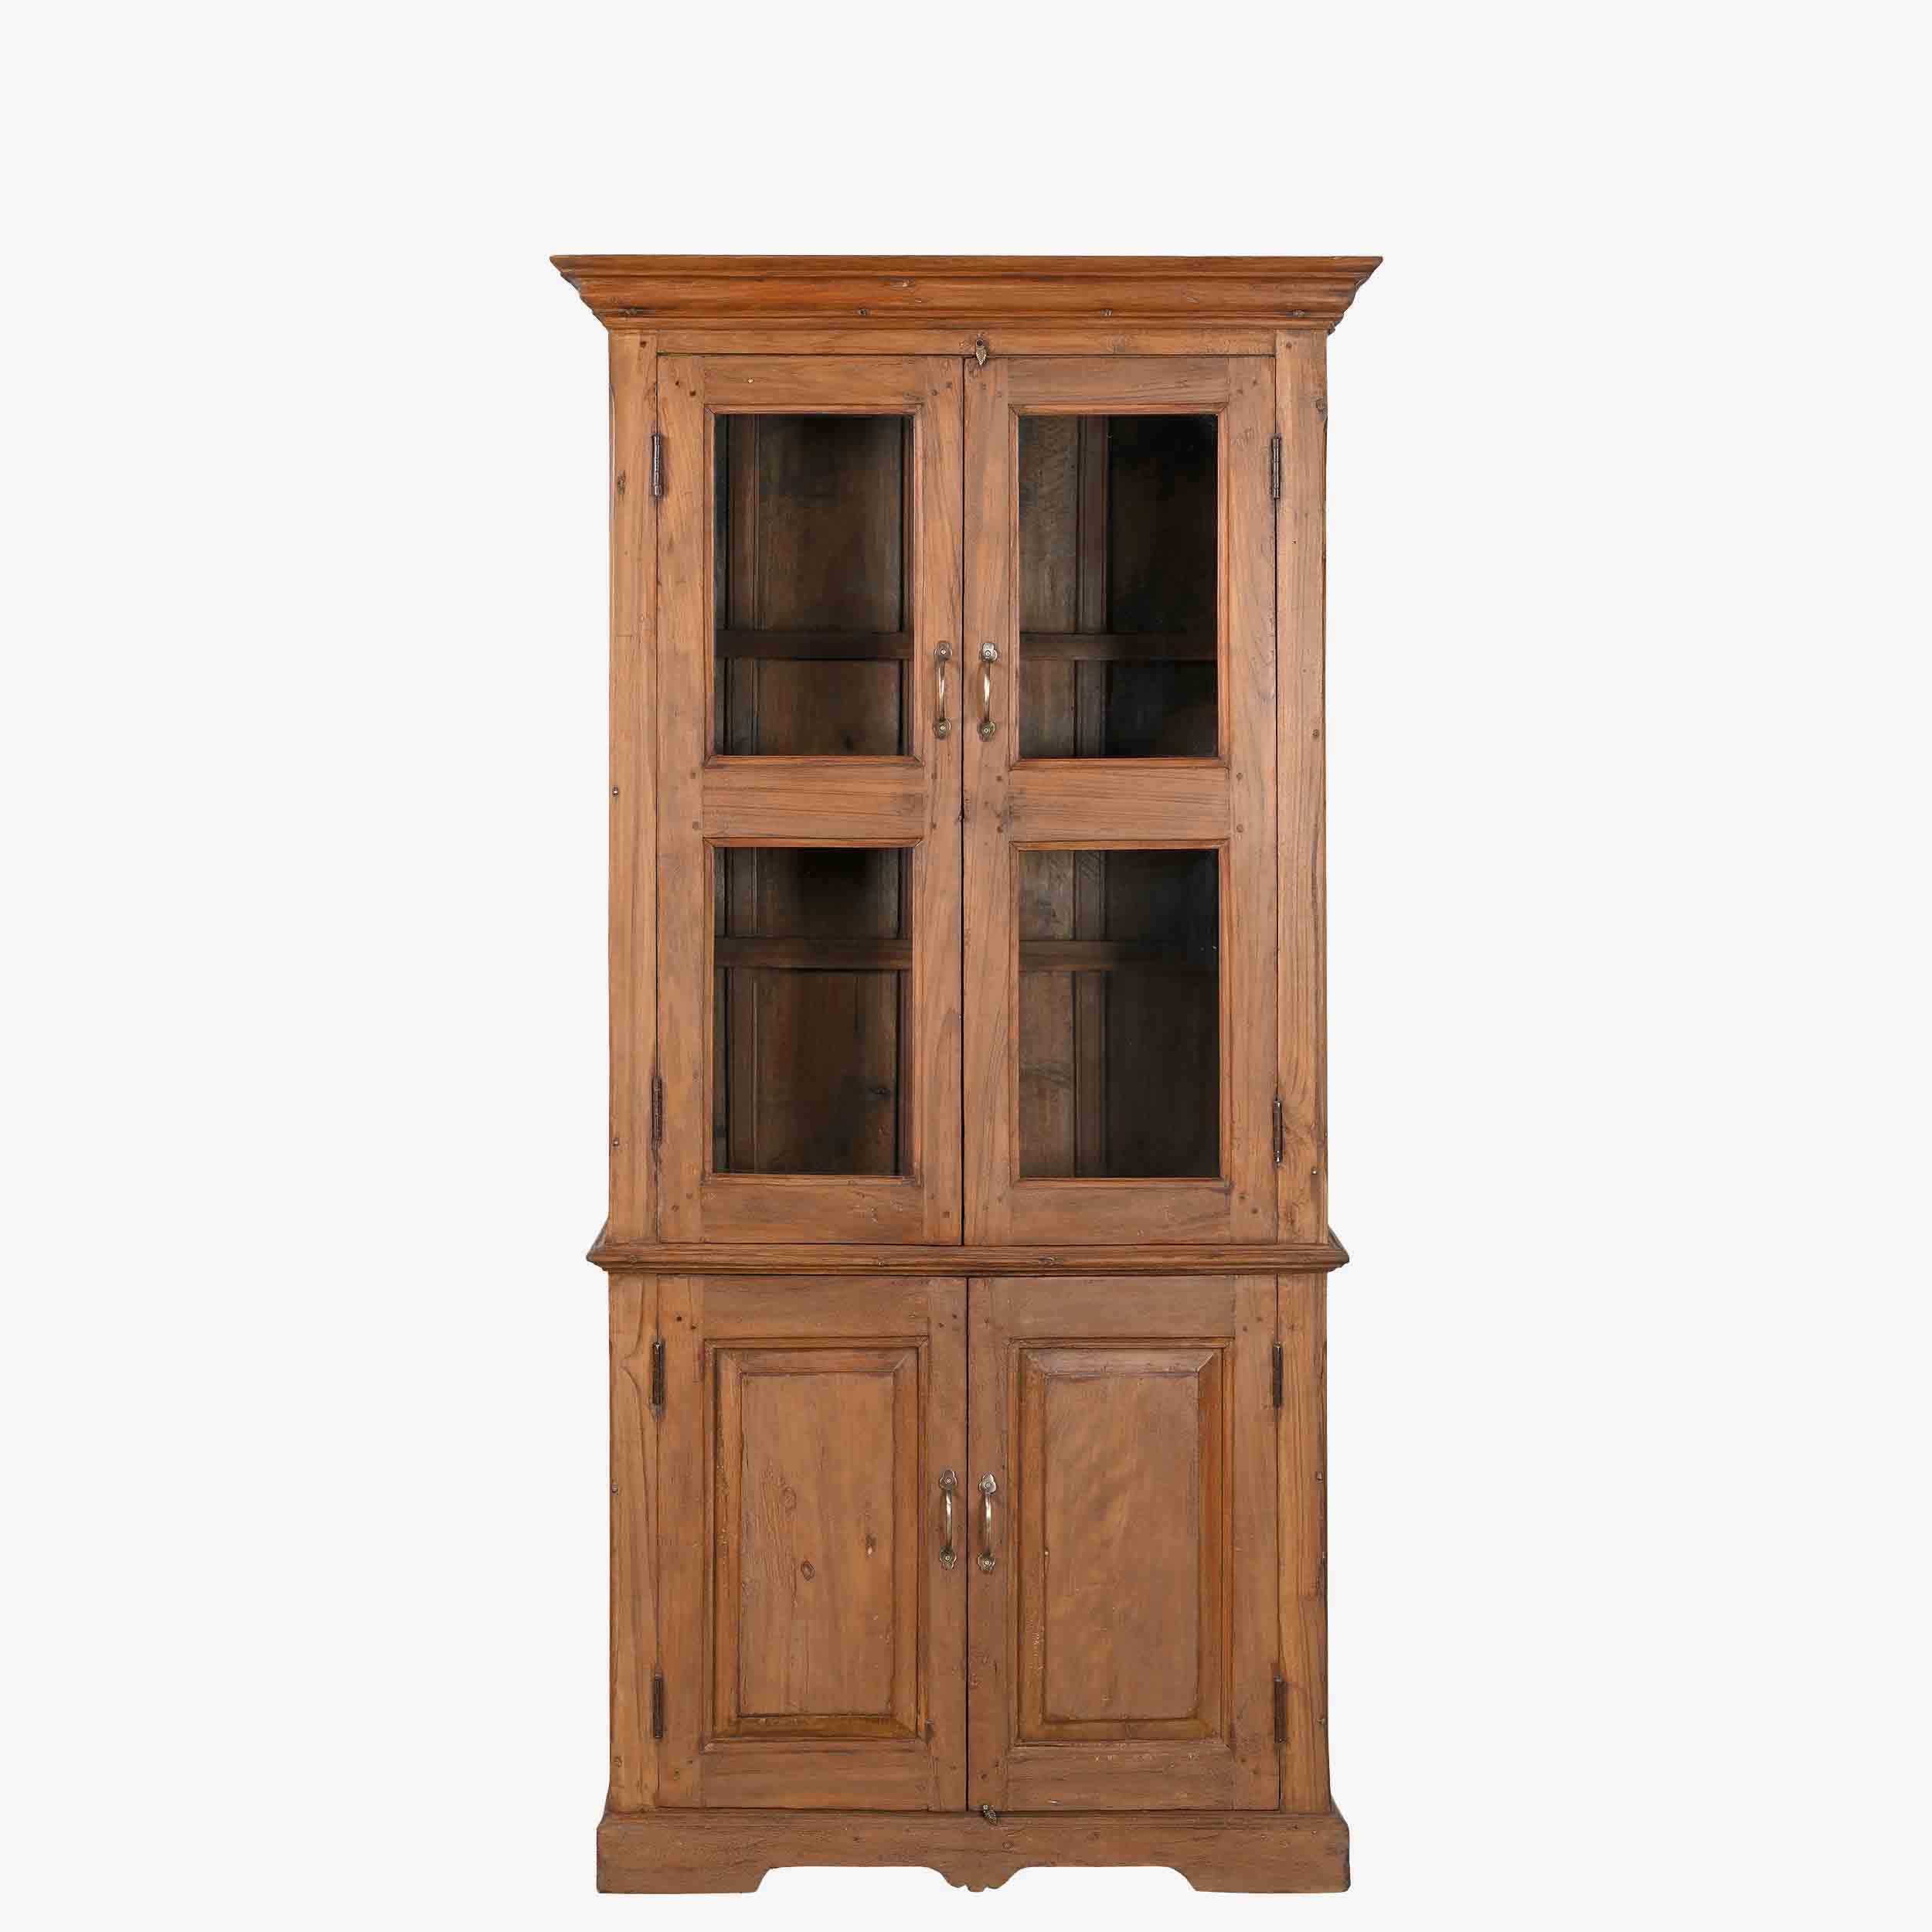 The Keenan Antique Dresser with hidden storage